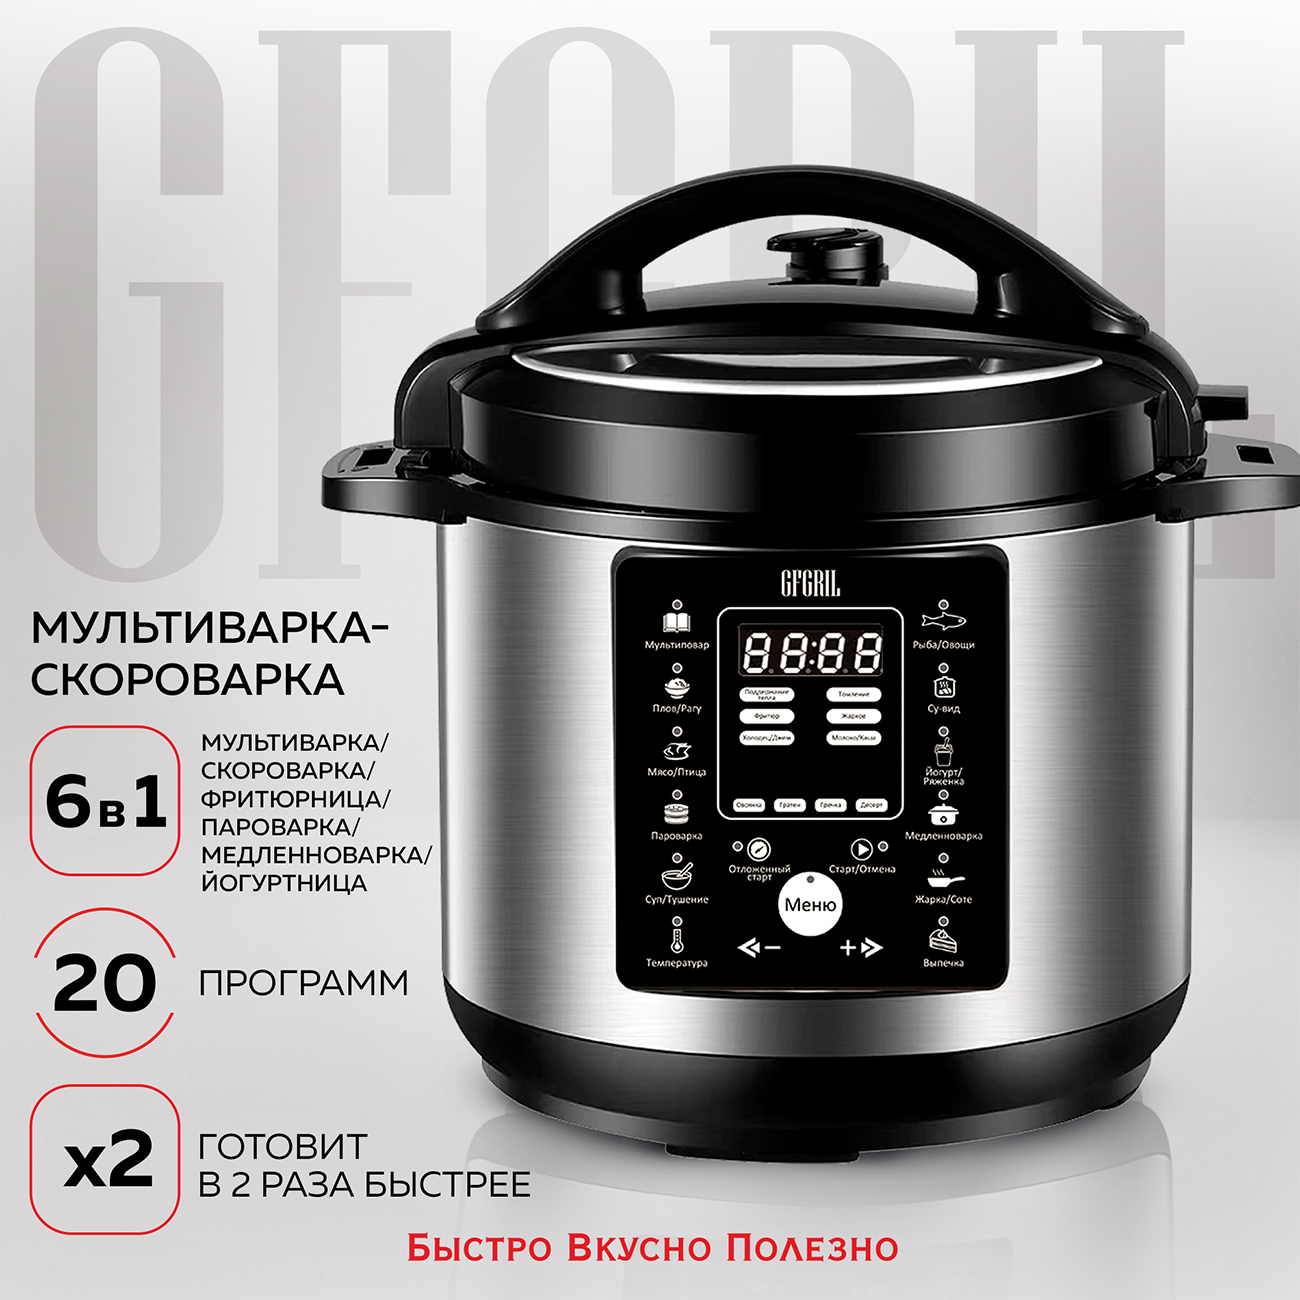 Мультиварка-скороварка GFGRIL GFM-500 серебристая, черная мультиварка скороварка turbo cuisine cy753832